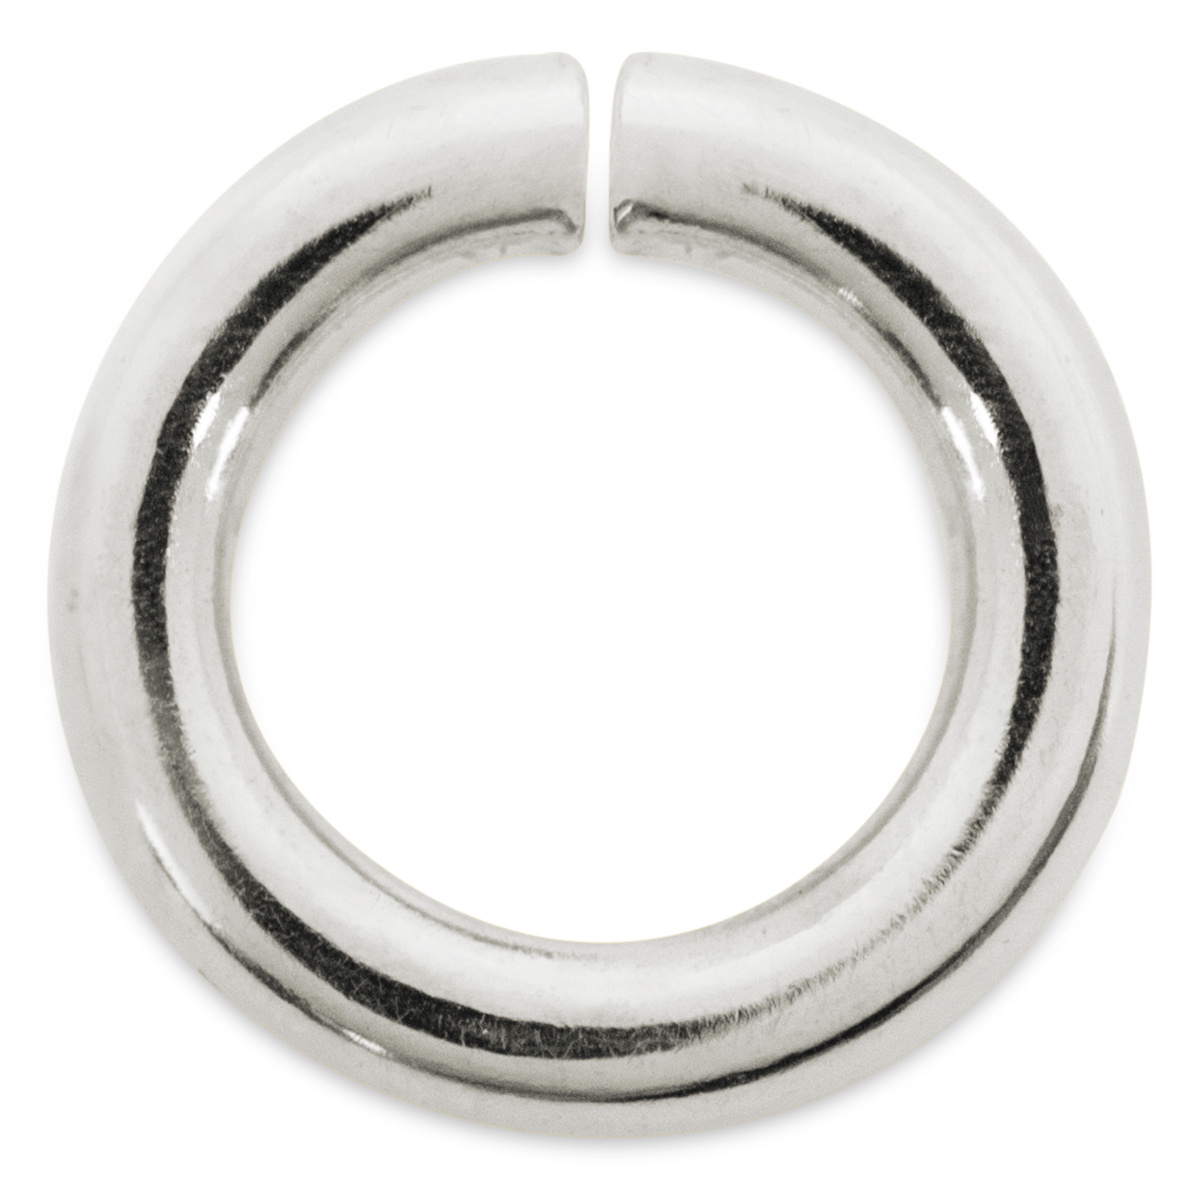 Binderinge, rund, 925/- Silber, Ø 3 mm, Stärke 0,7 mm